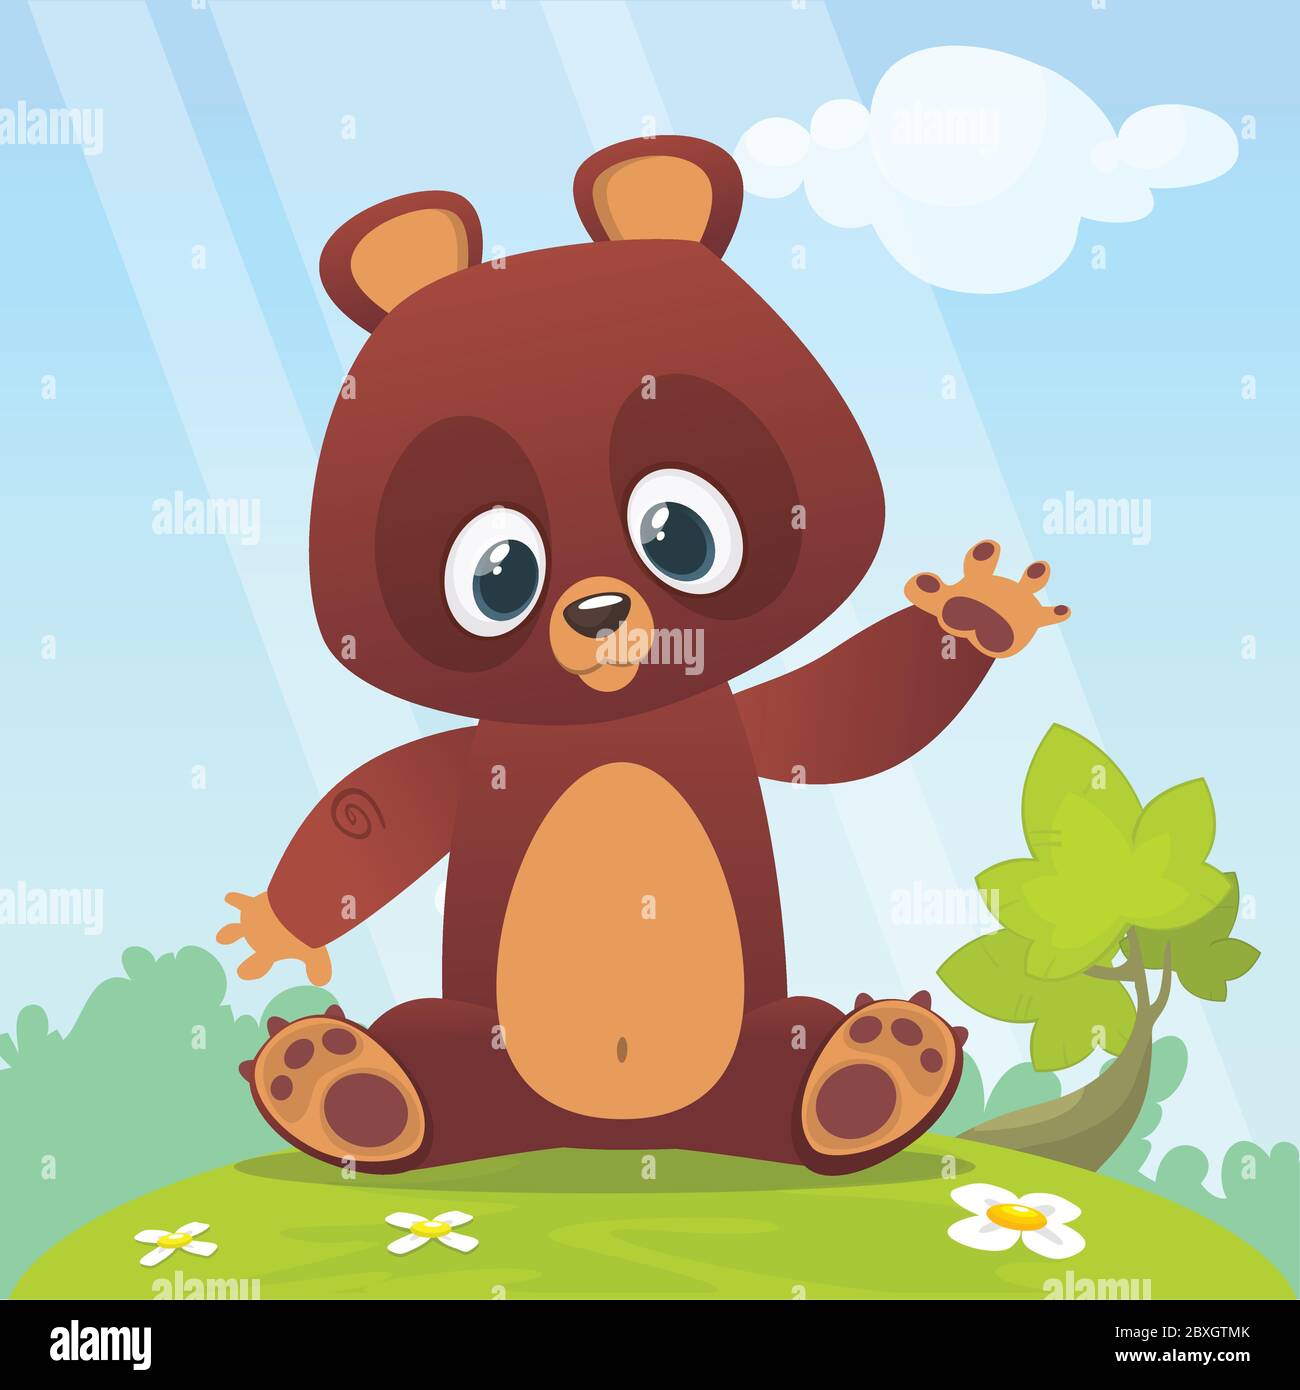 Cute Cartoon Teddy Bear on a meadow with flowers. Vector illustration Stock  Vector Image & Art - Alamy